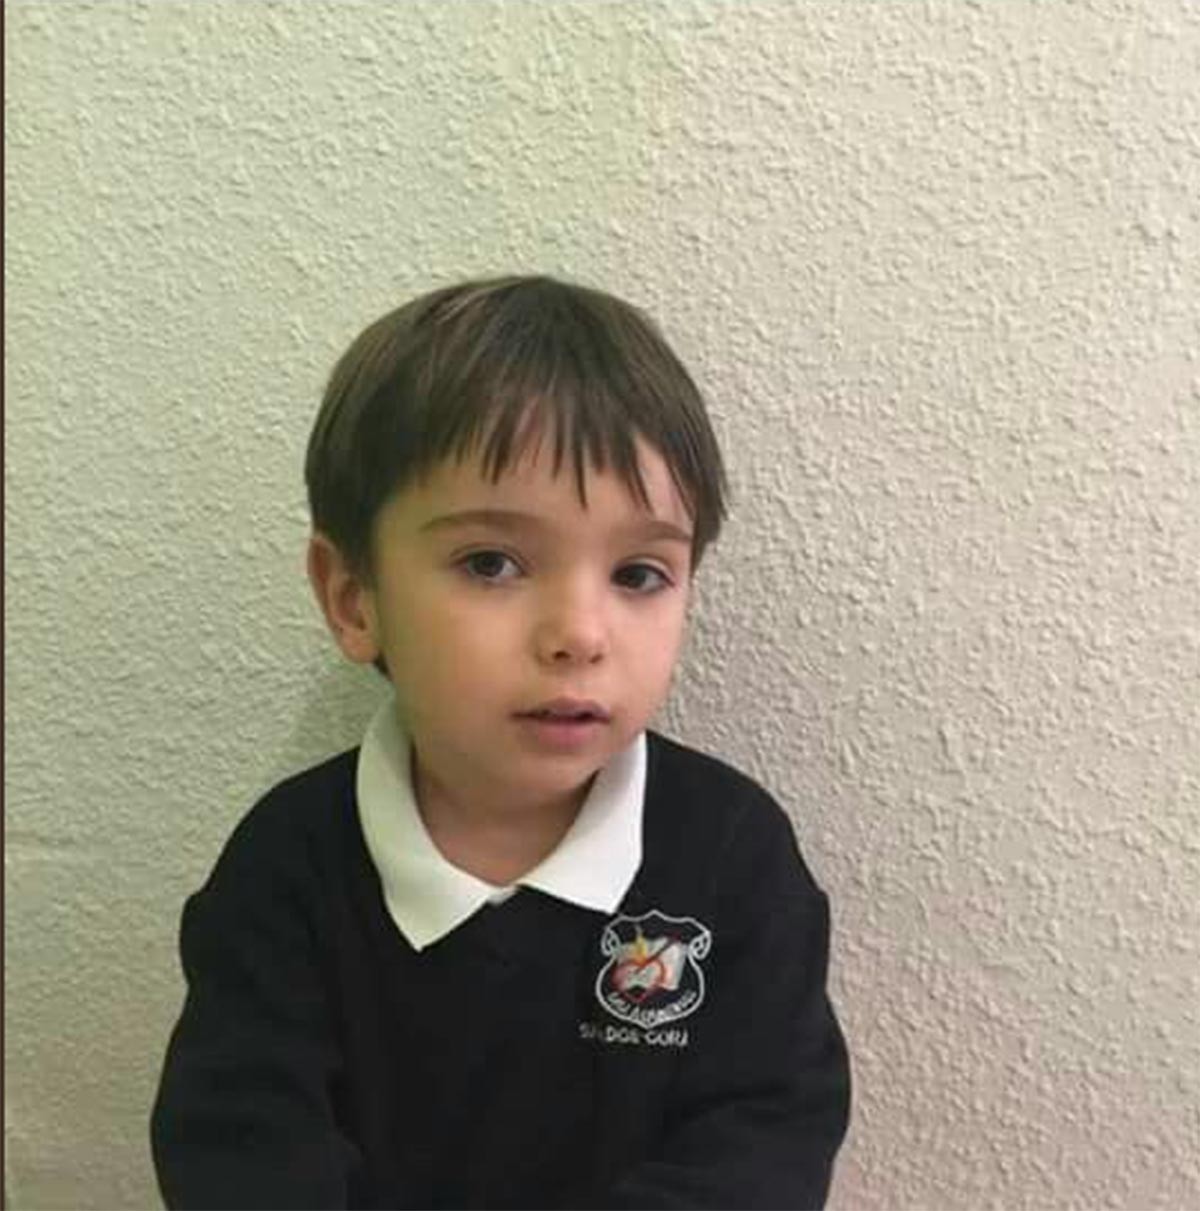 El niño autista desaparecido en Navalcán (Toledo)